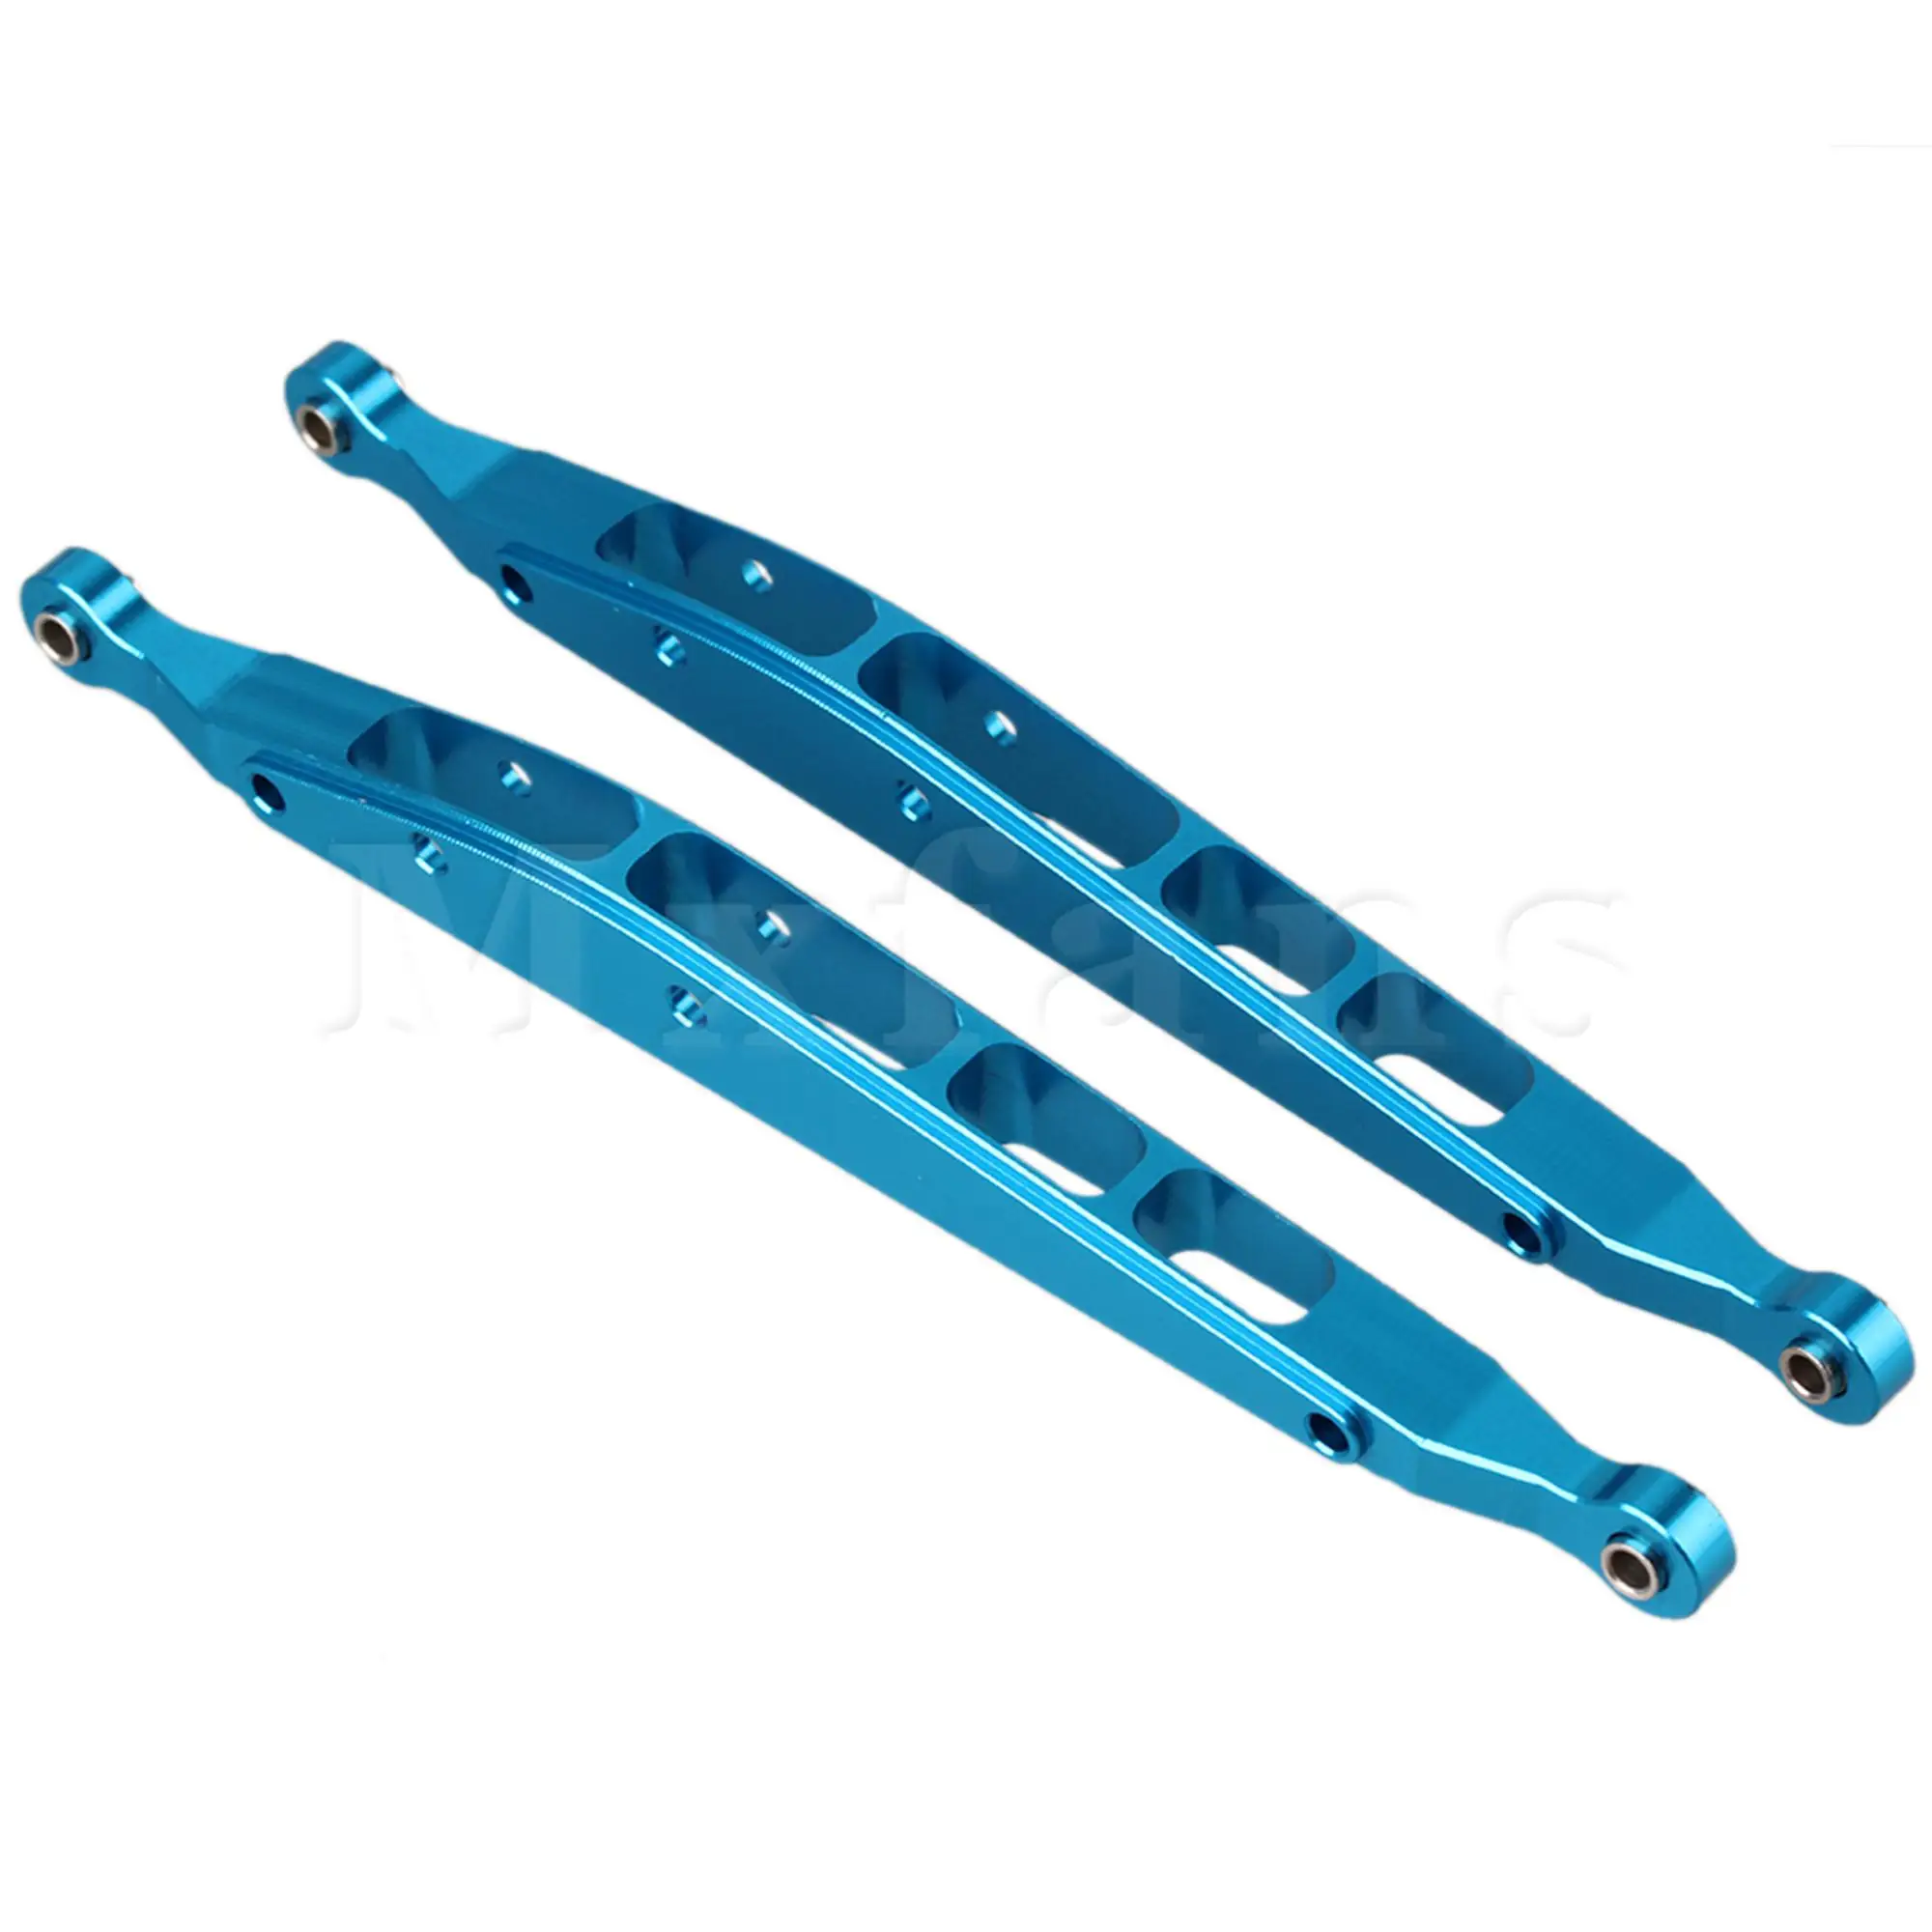 Albastru Inferior Spate Sasiu Hidraulic Link-ul de AX31008 Înlocuitor pentru AXIALE YETI Rock Racer RC 1:10 90026 Pachet de 2